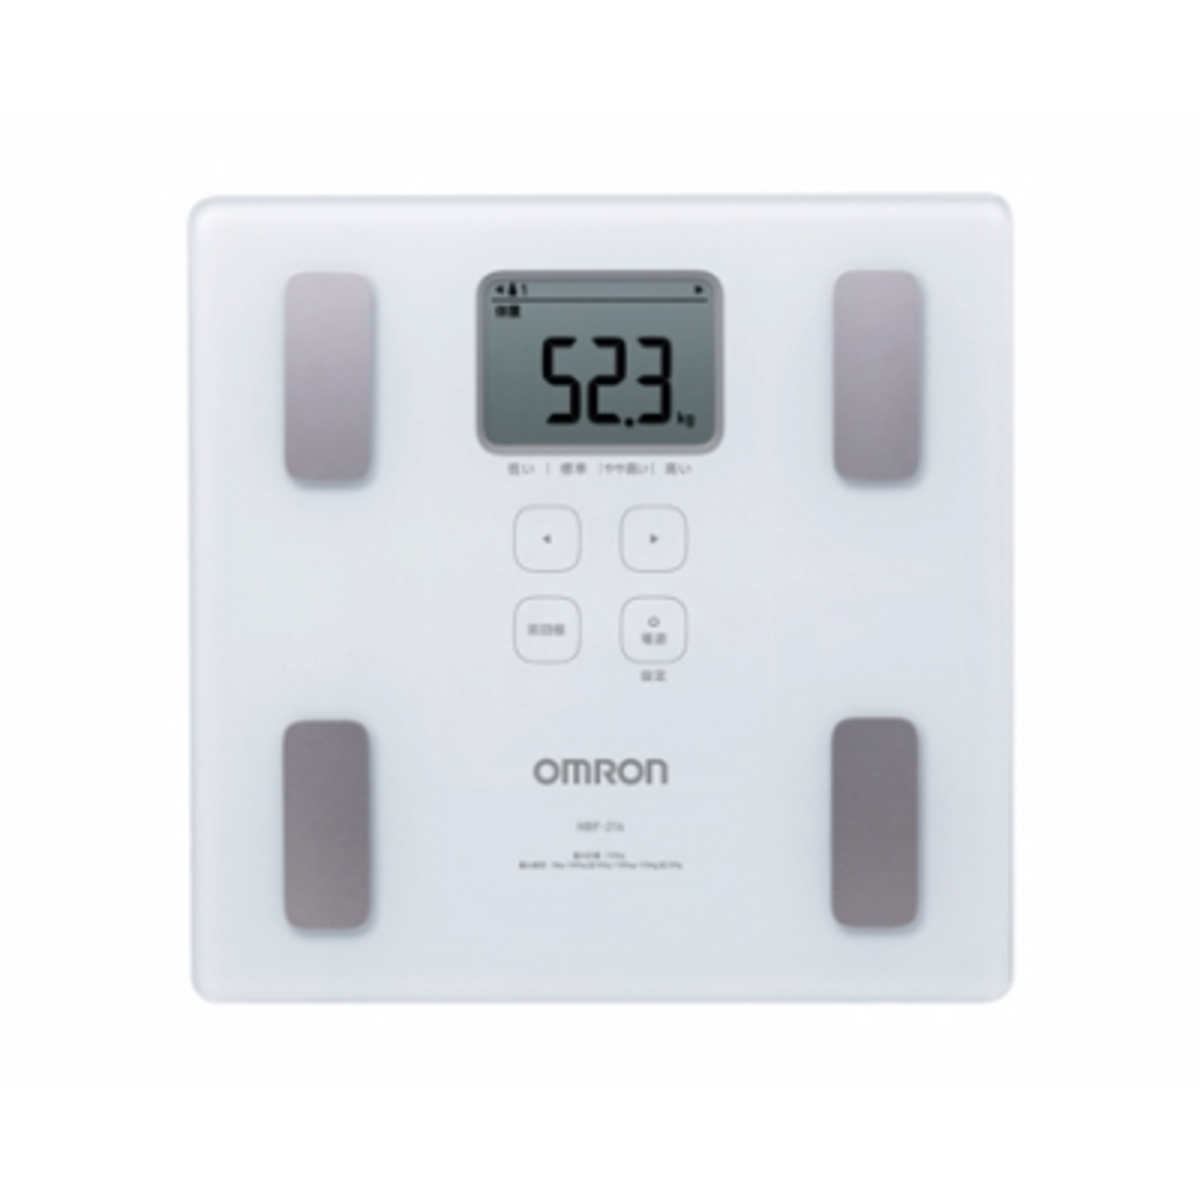 OMRON - HBF-214 體重體脂肪測量器 - 白色【香港行貨】